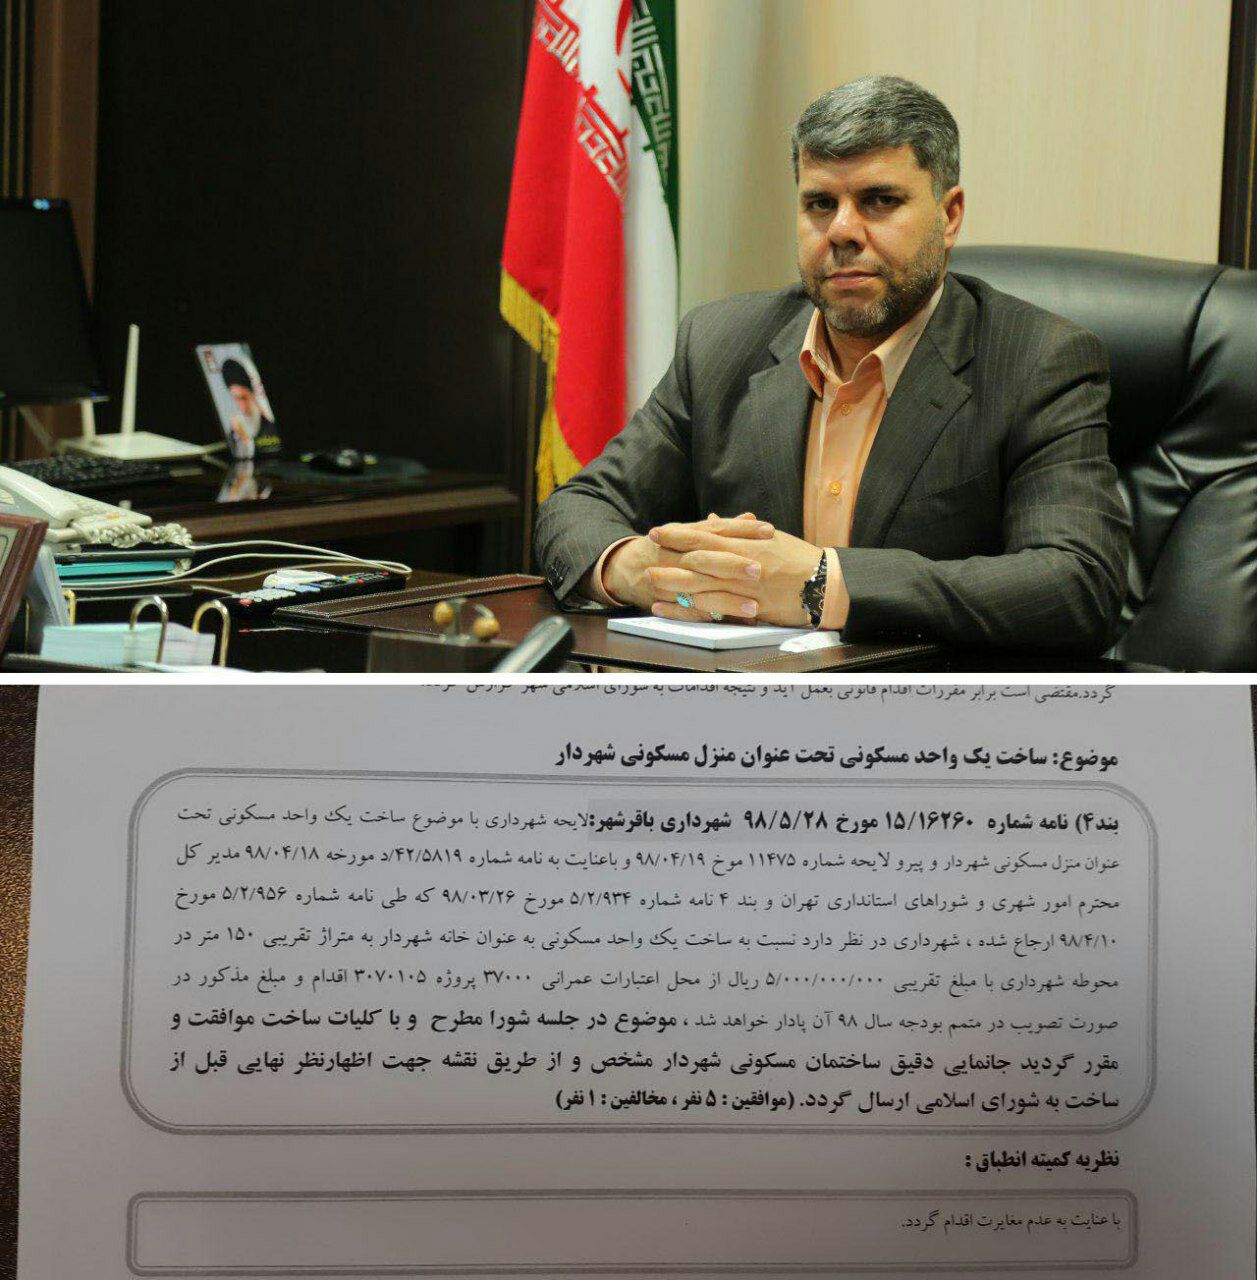 هزینه 500میلیون تومانی شورا برای ساخت خانه شهردار باقرشهر!